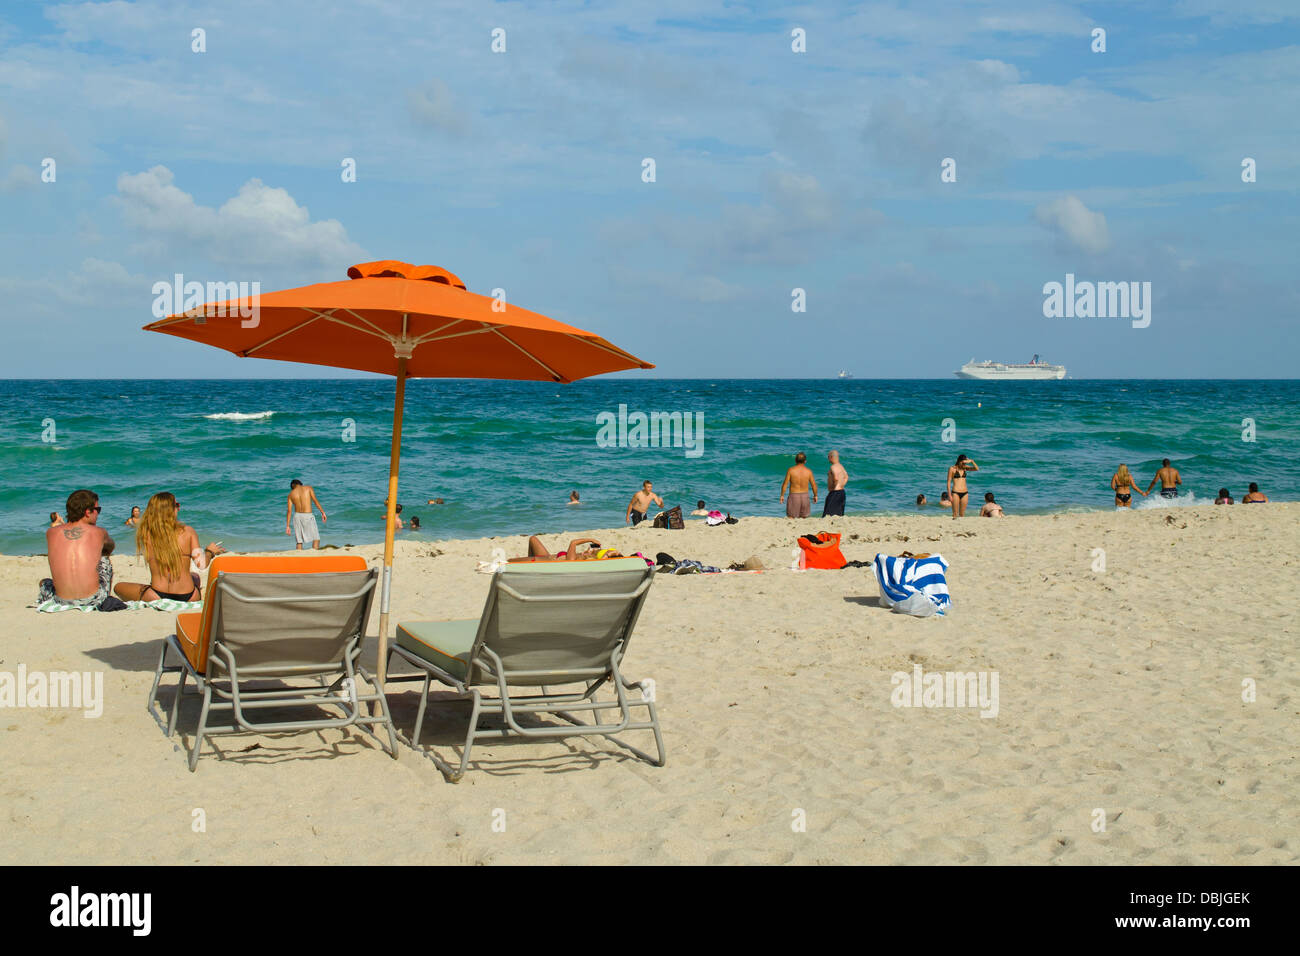 Chaises de plage, parasol orange et beaucoup d'heureux amateurs de plage à South Beach, Miami, Floride. Un bateau de croisière est dans la distance. Banque D'Images